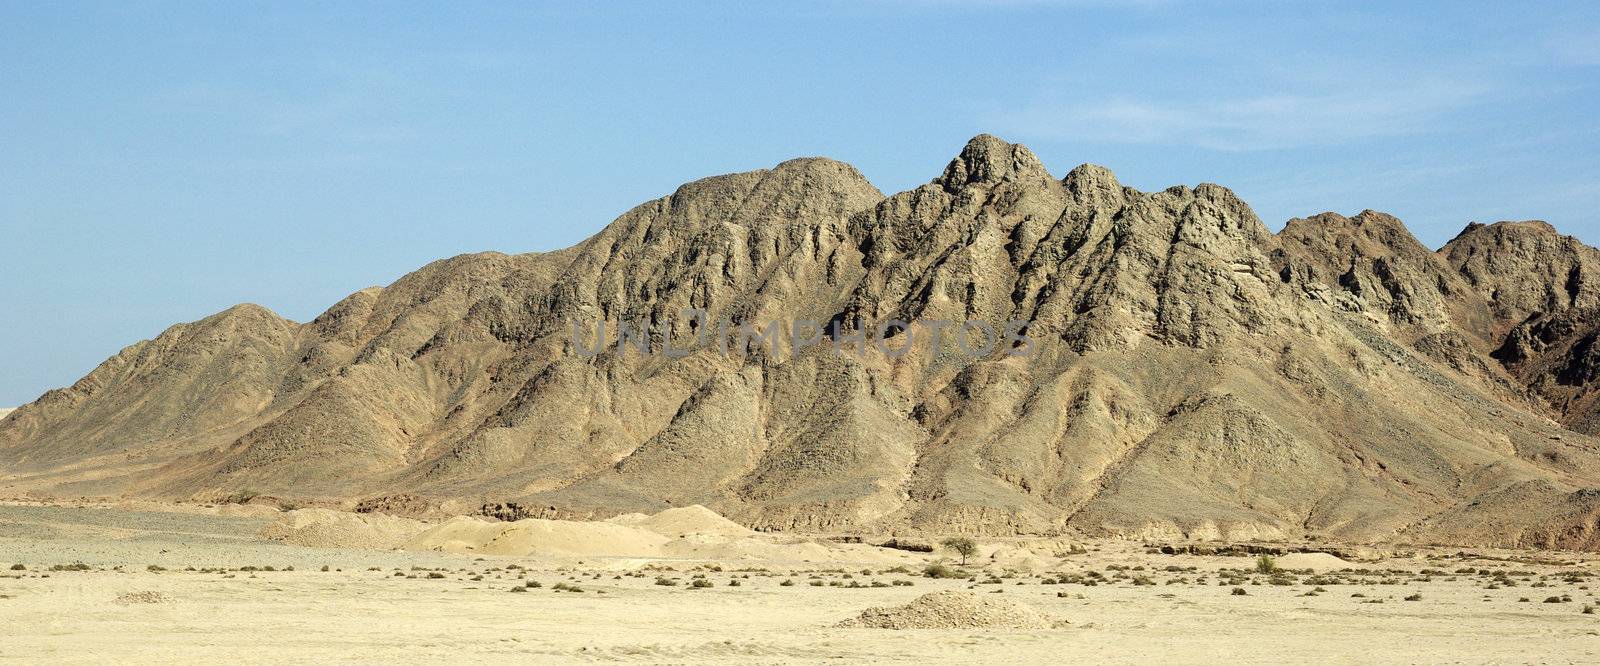 Mountain landscape in egyptian desert. Panaromic. by borodaev